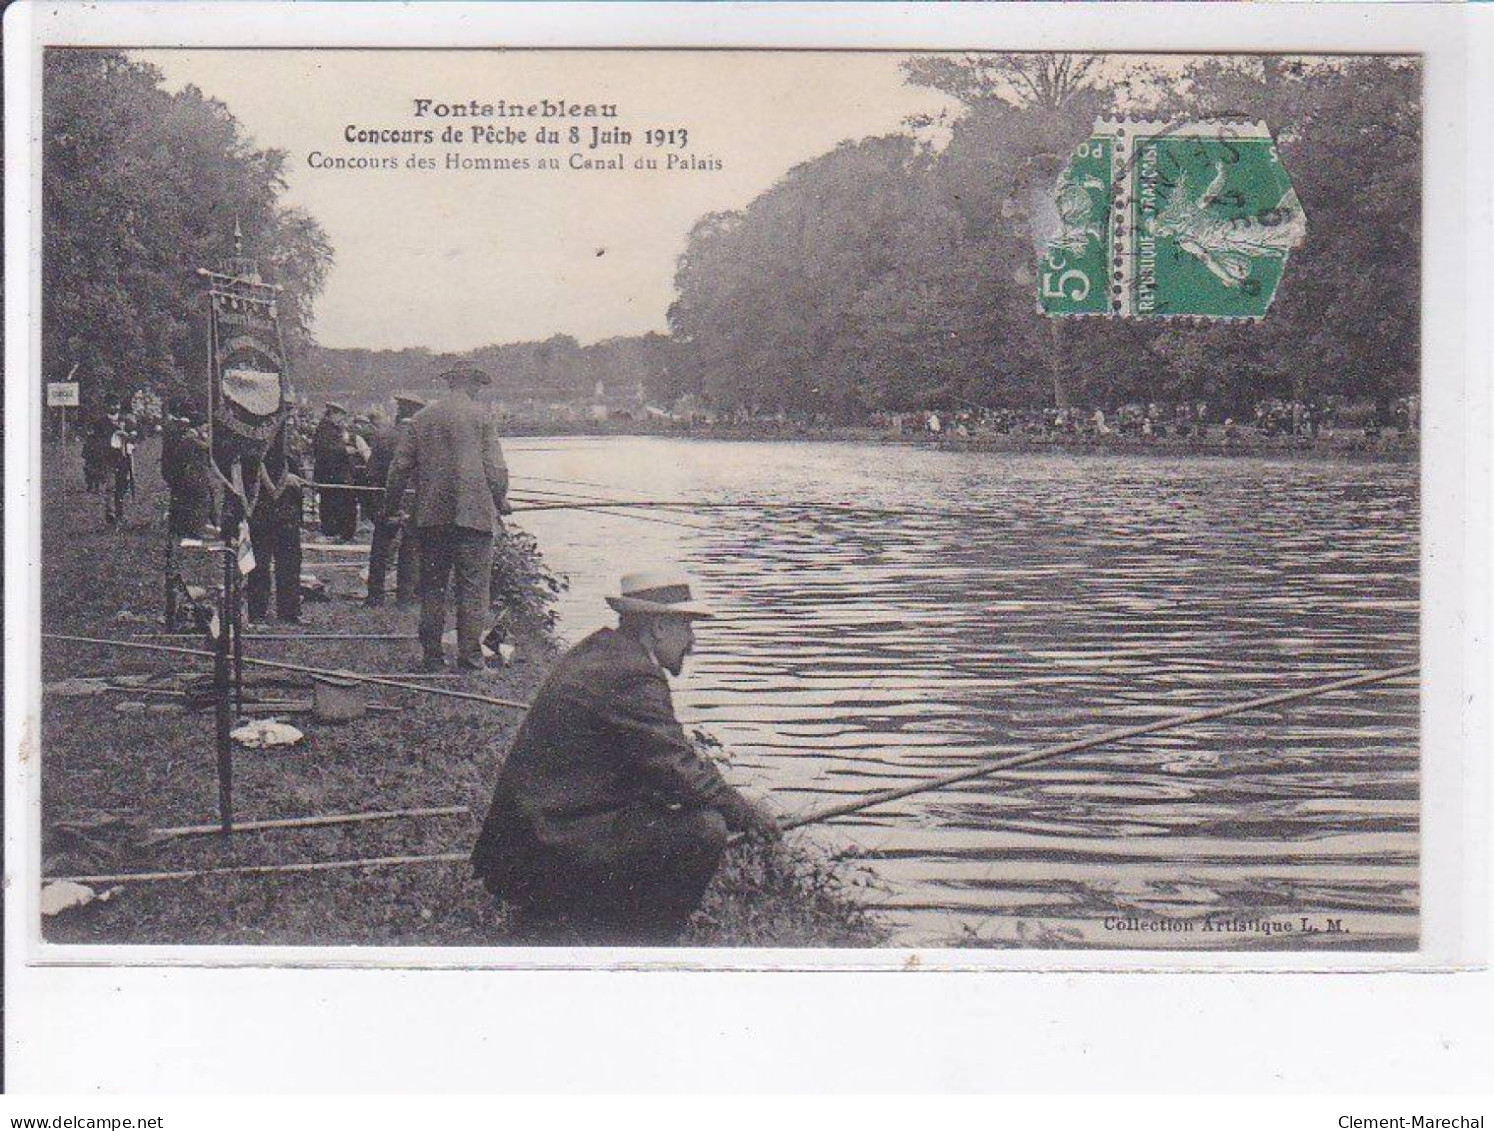 FONTAINEBLEAU: Concours De Pêche Du 8 Juin 1913, Concours Des Hommes Au Canal Du Palais - état - Fontainebleau